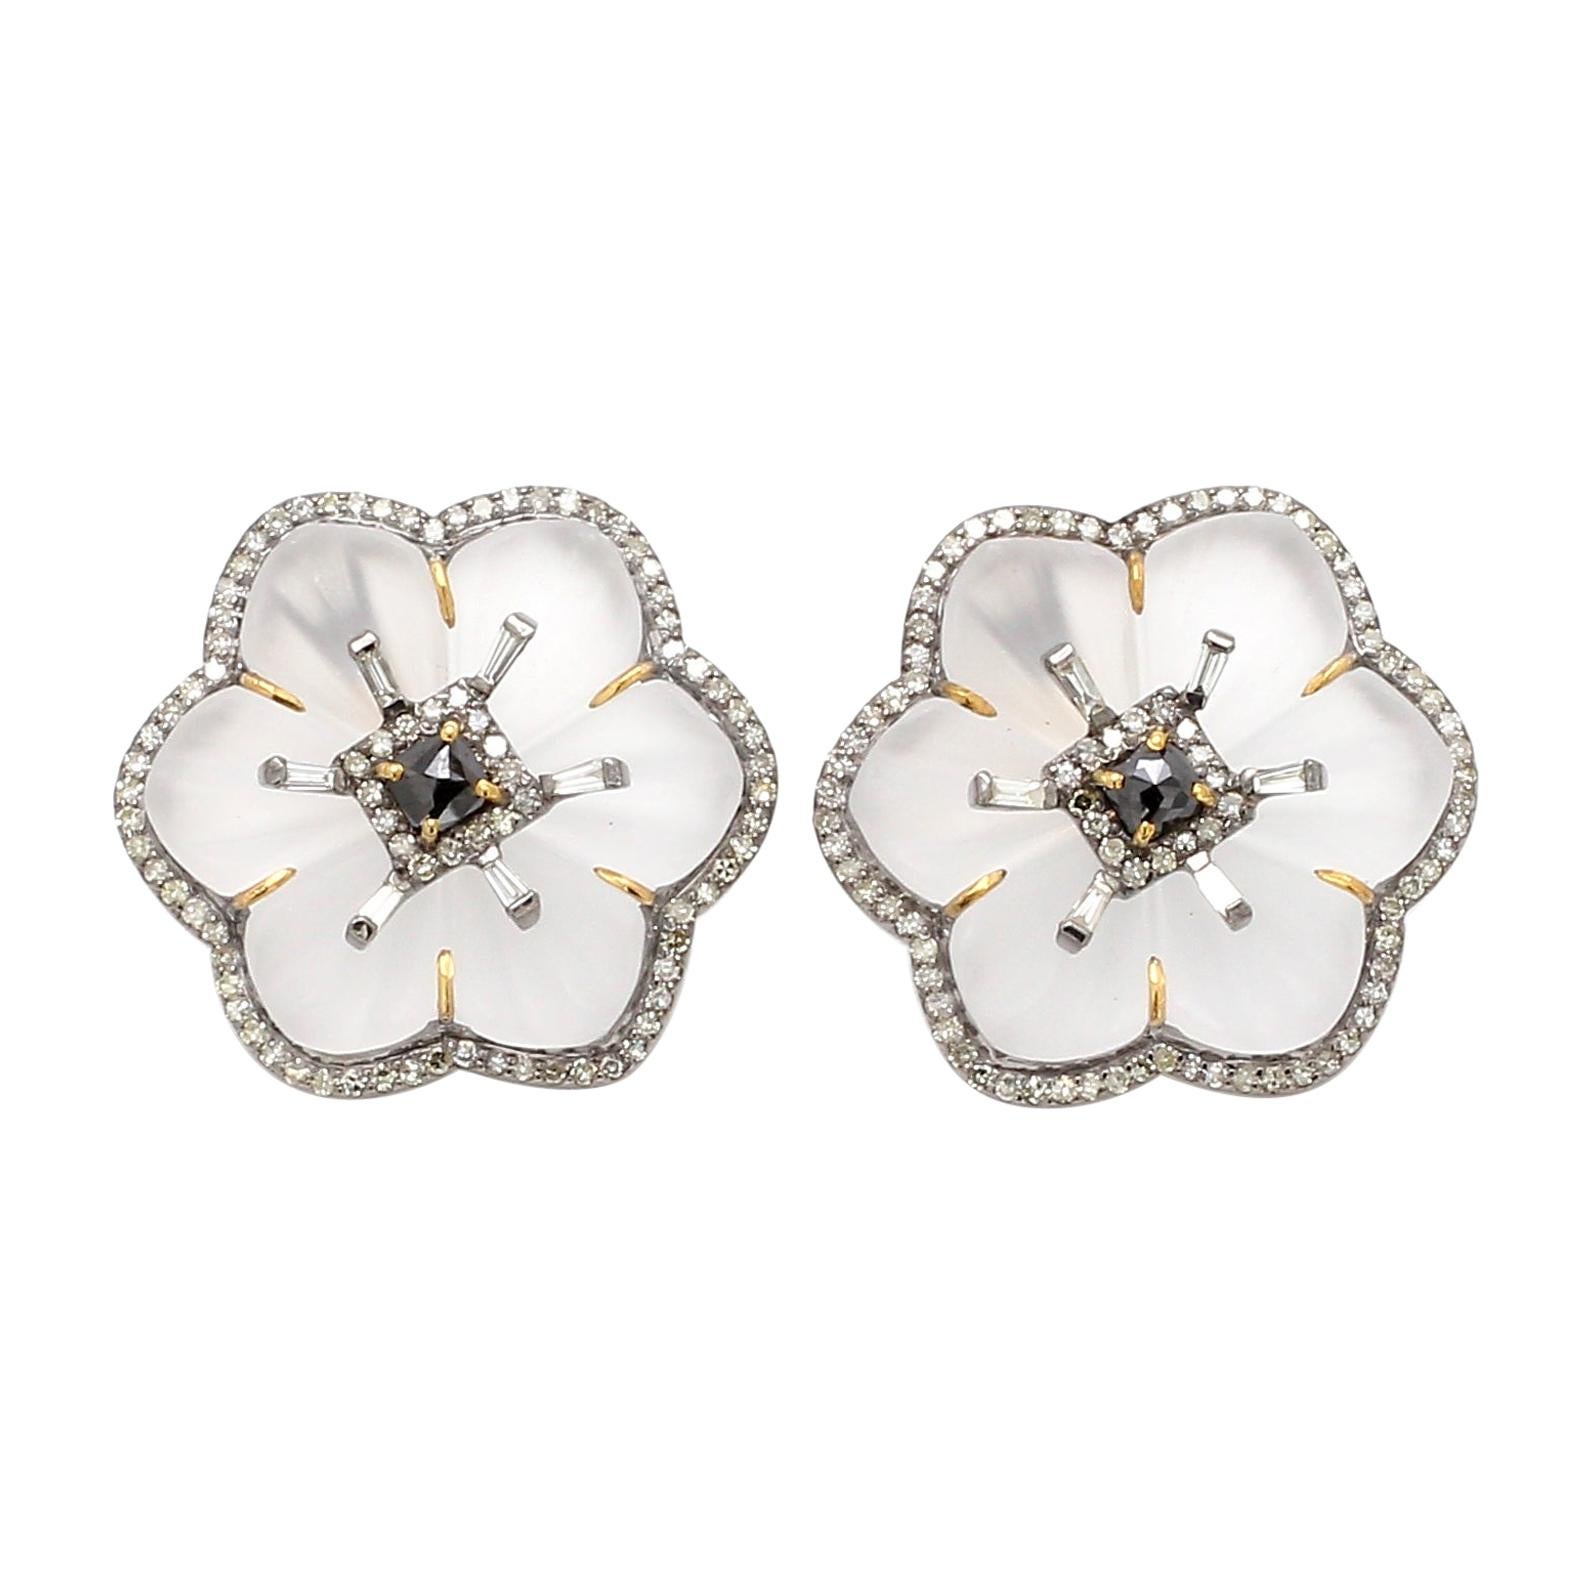 1.46 Carat White Diamond, Black Diamond, and Crystal Flower Stud Earrings